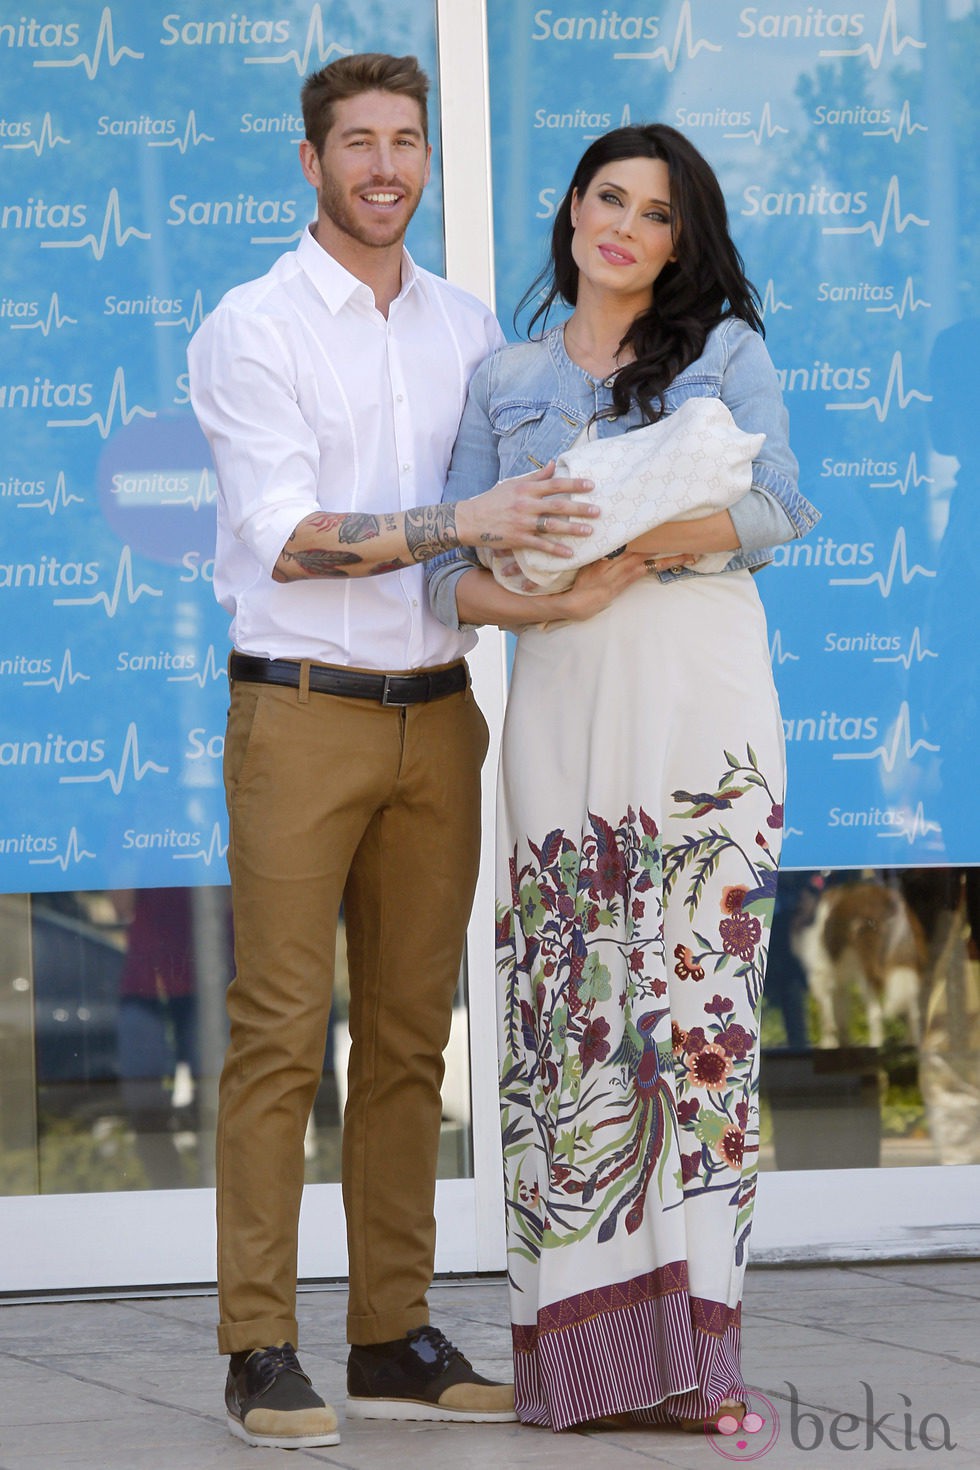 Sergio Ramos y Pilar Rubio presentan a su hijo Sergio